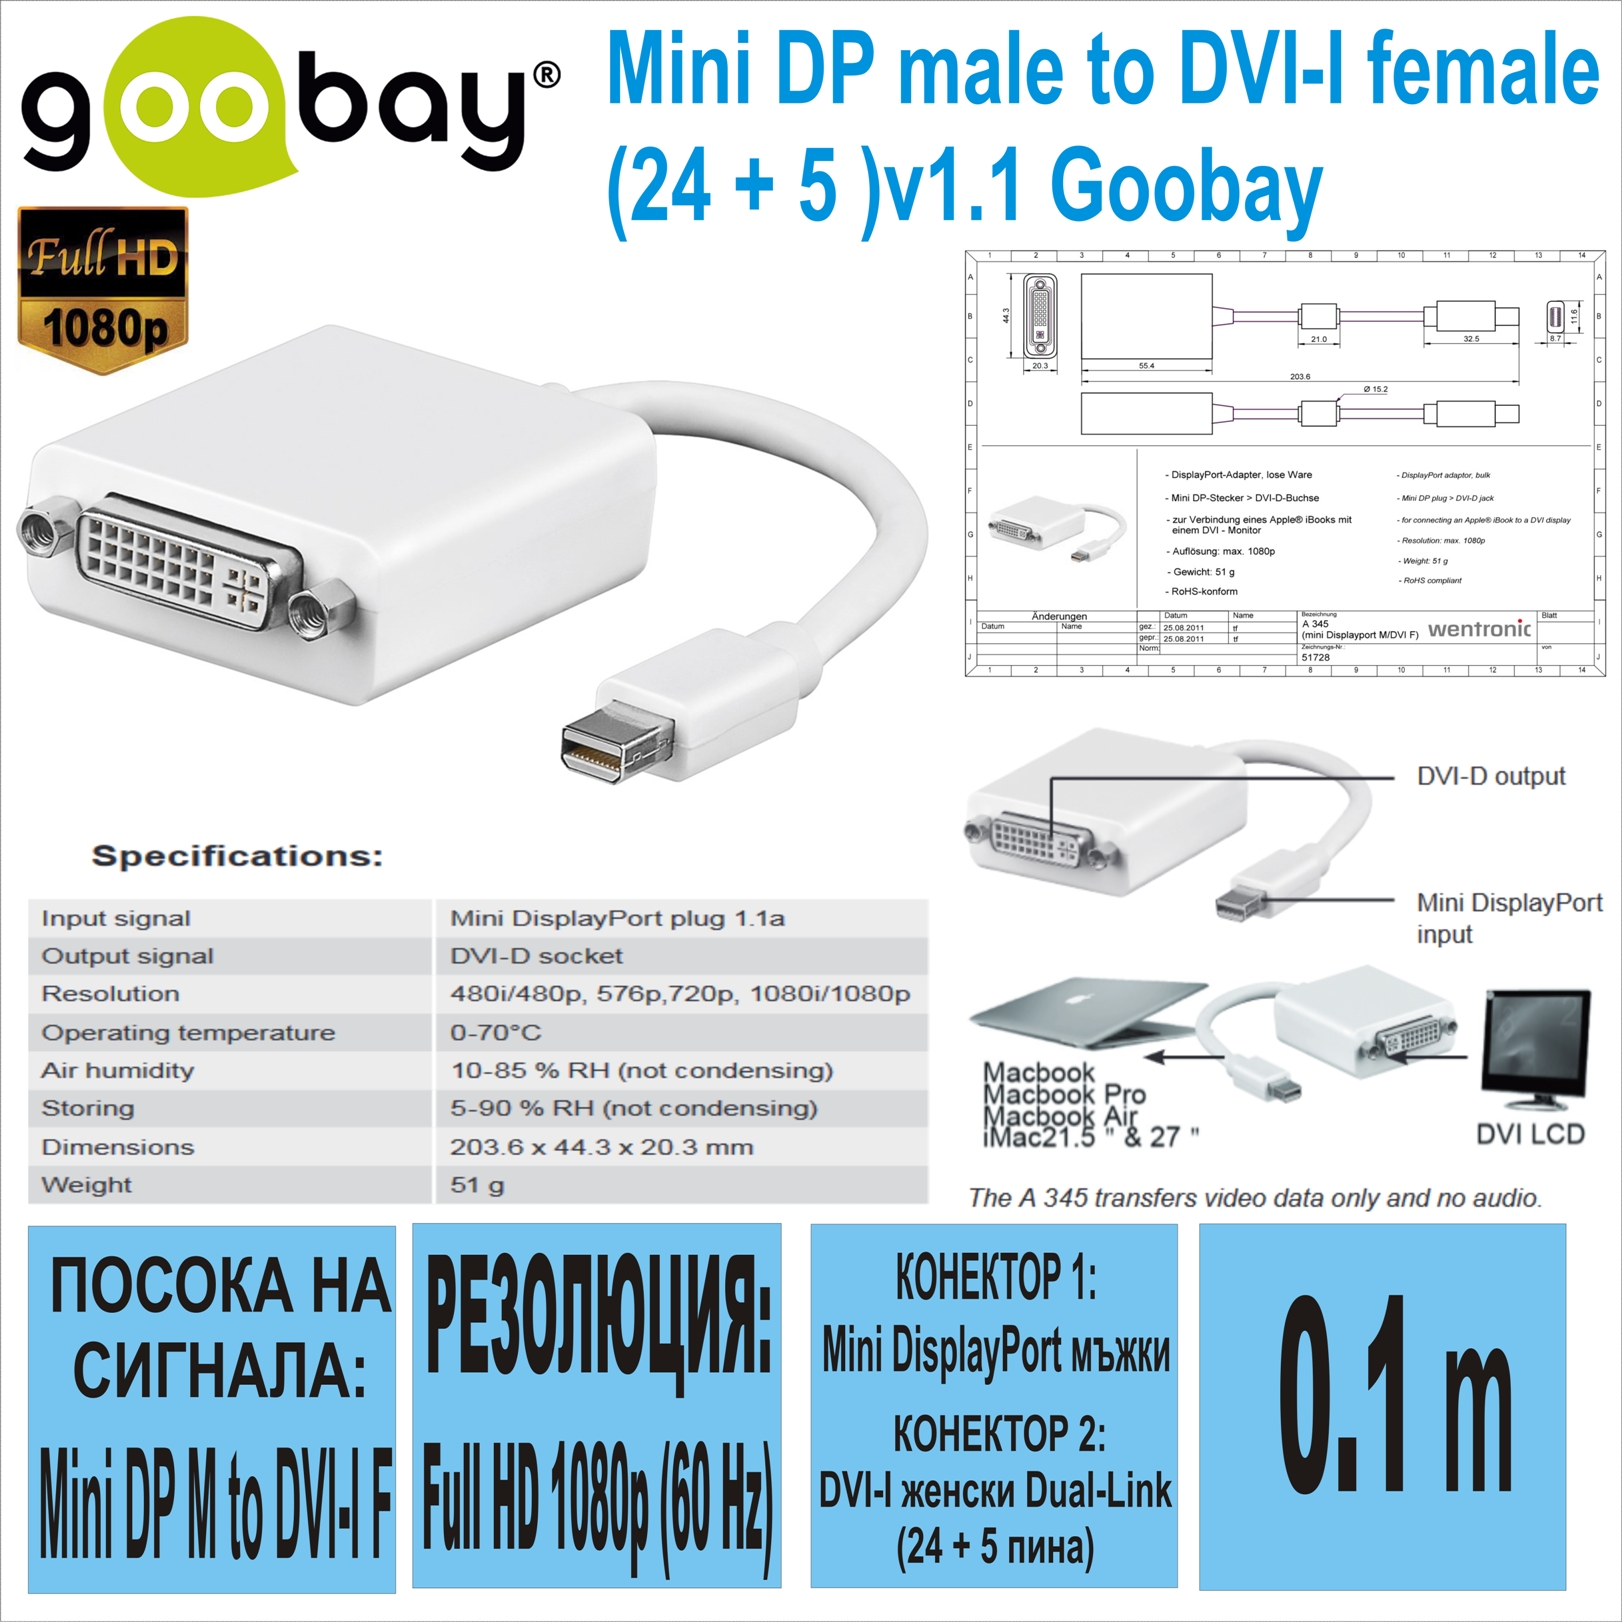 Mini DP male to DVI-I female(24 + 5 )v1.1 Goobay